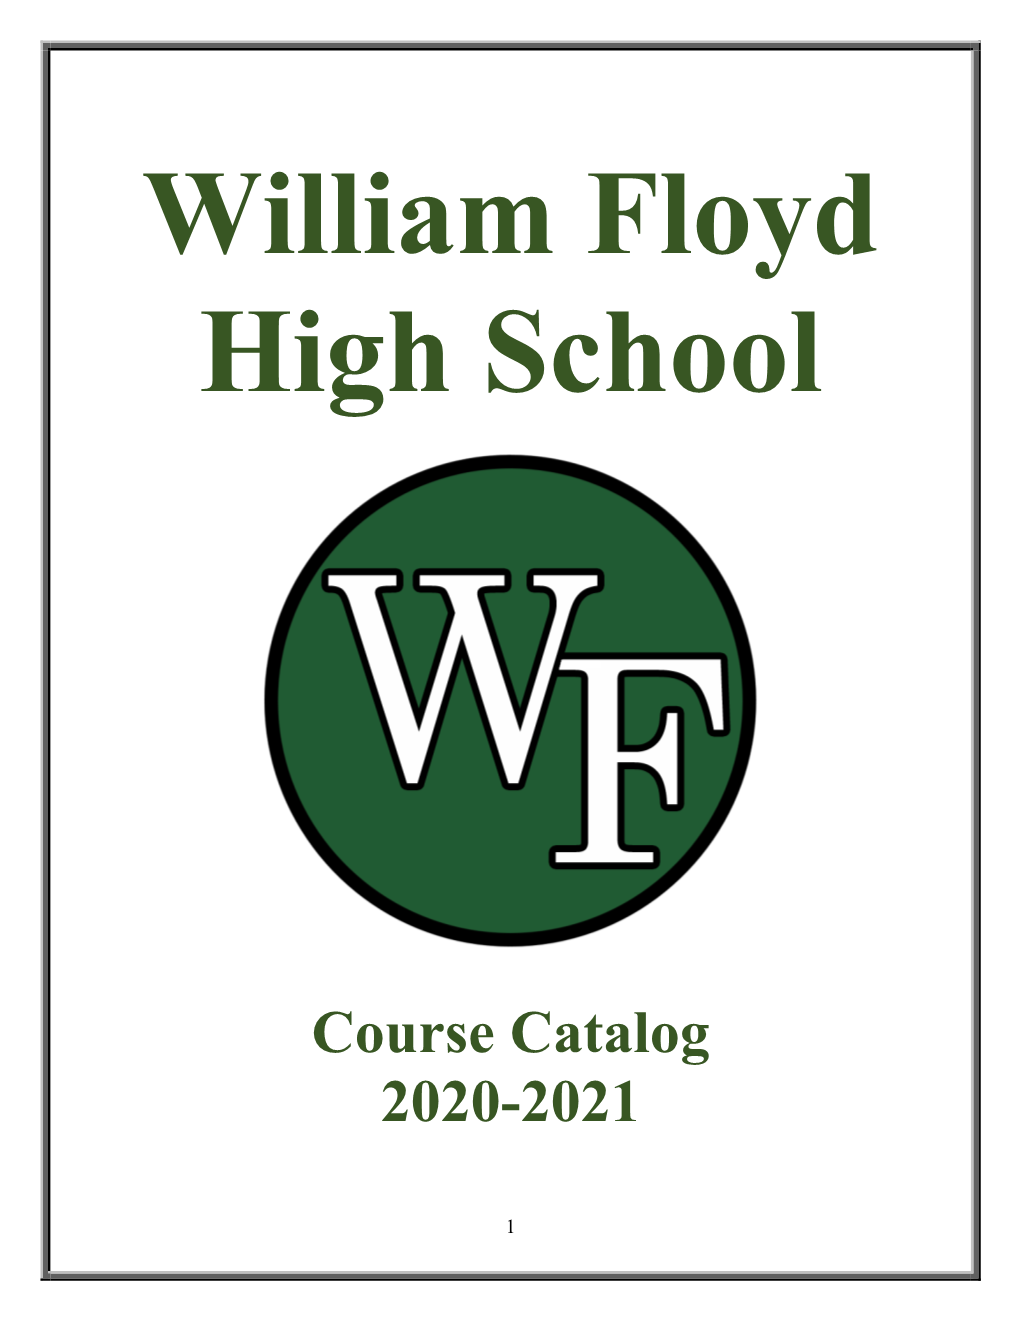 High School Course Catalog 2020-2021